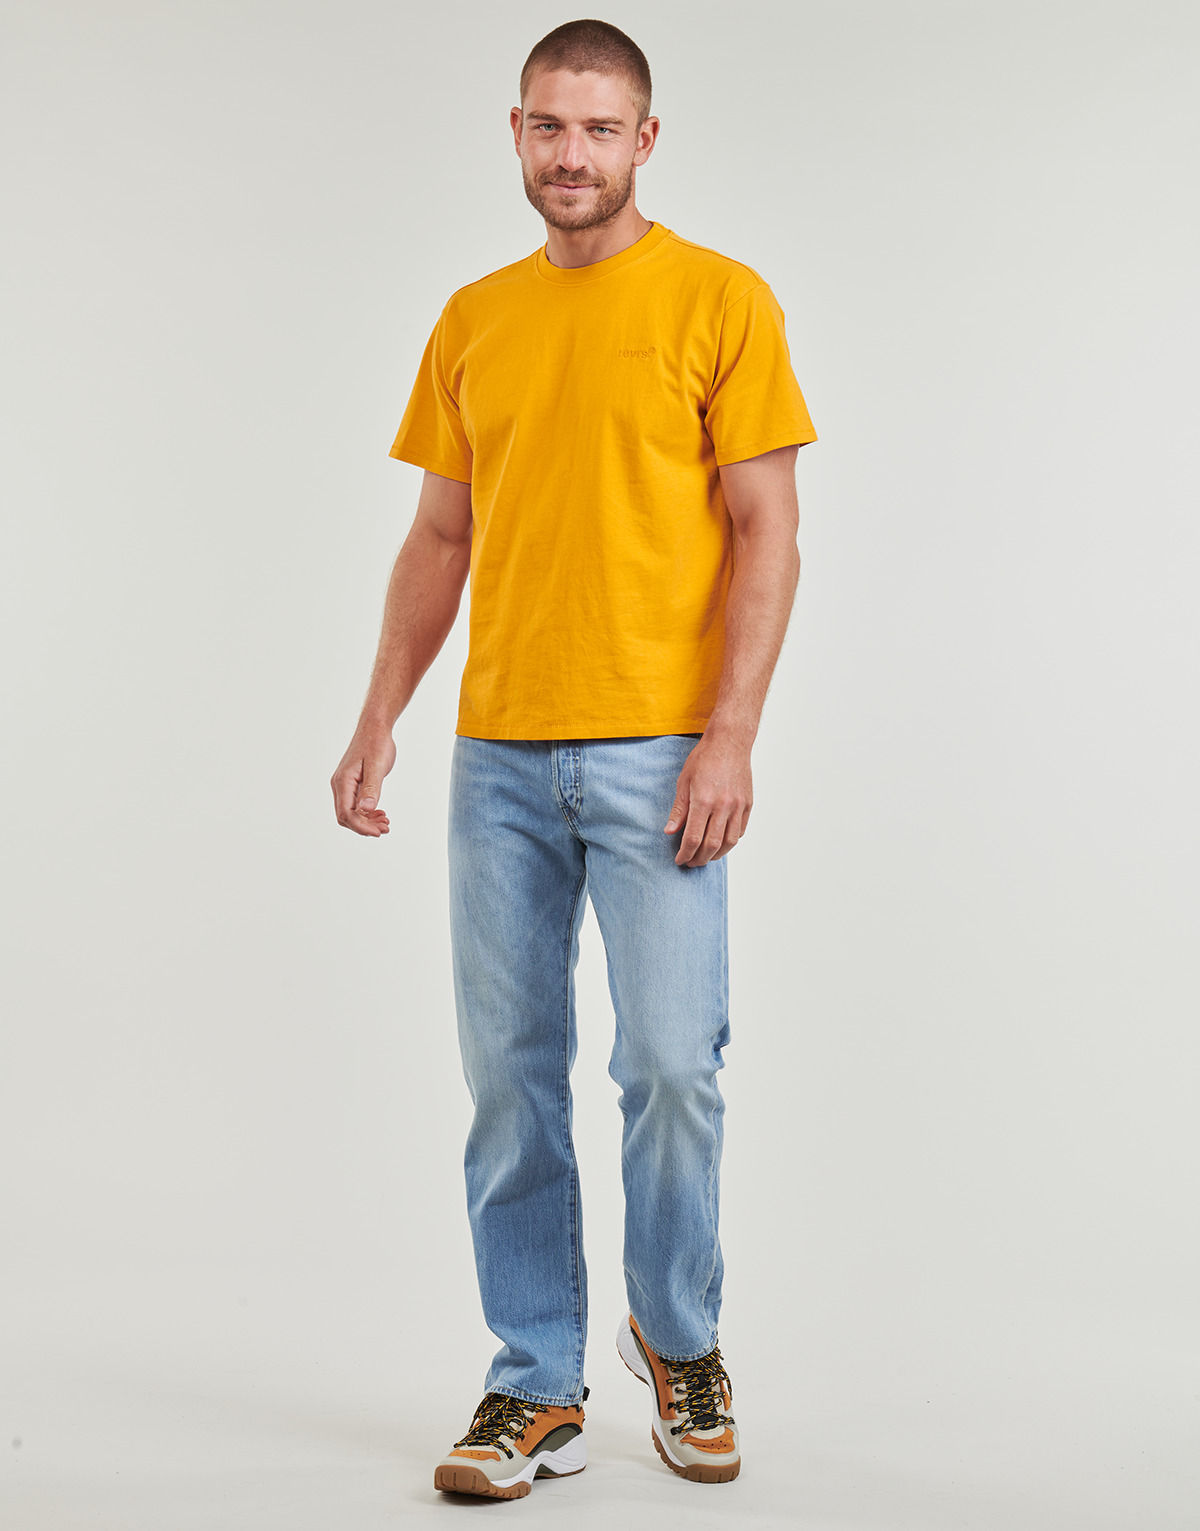 Abbigliamento Uomo Jeans dritti Levi's 501® LEVI'S ORIGINAL Lightweight 